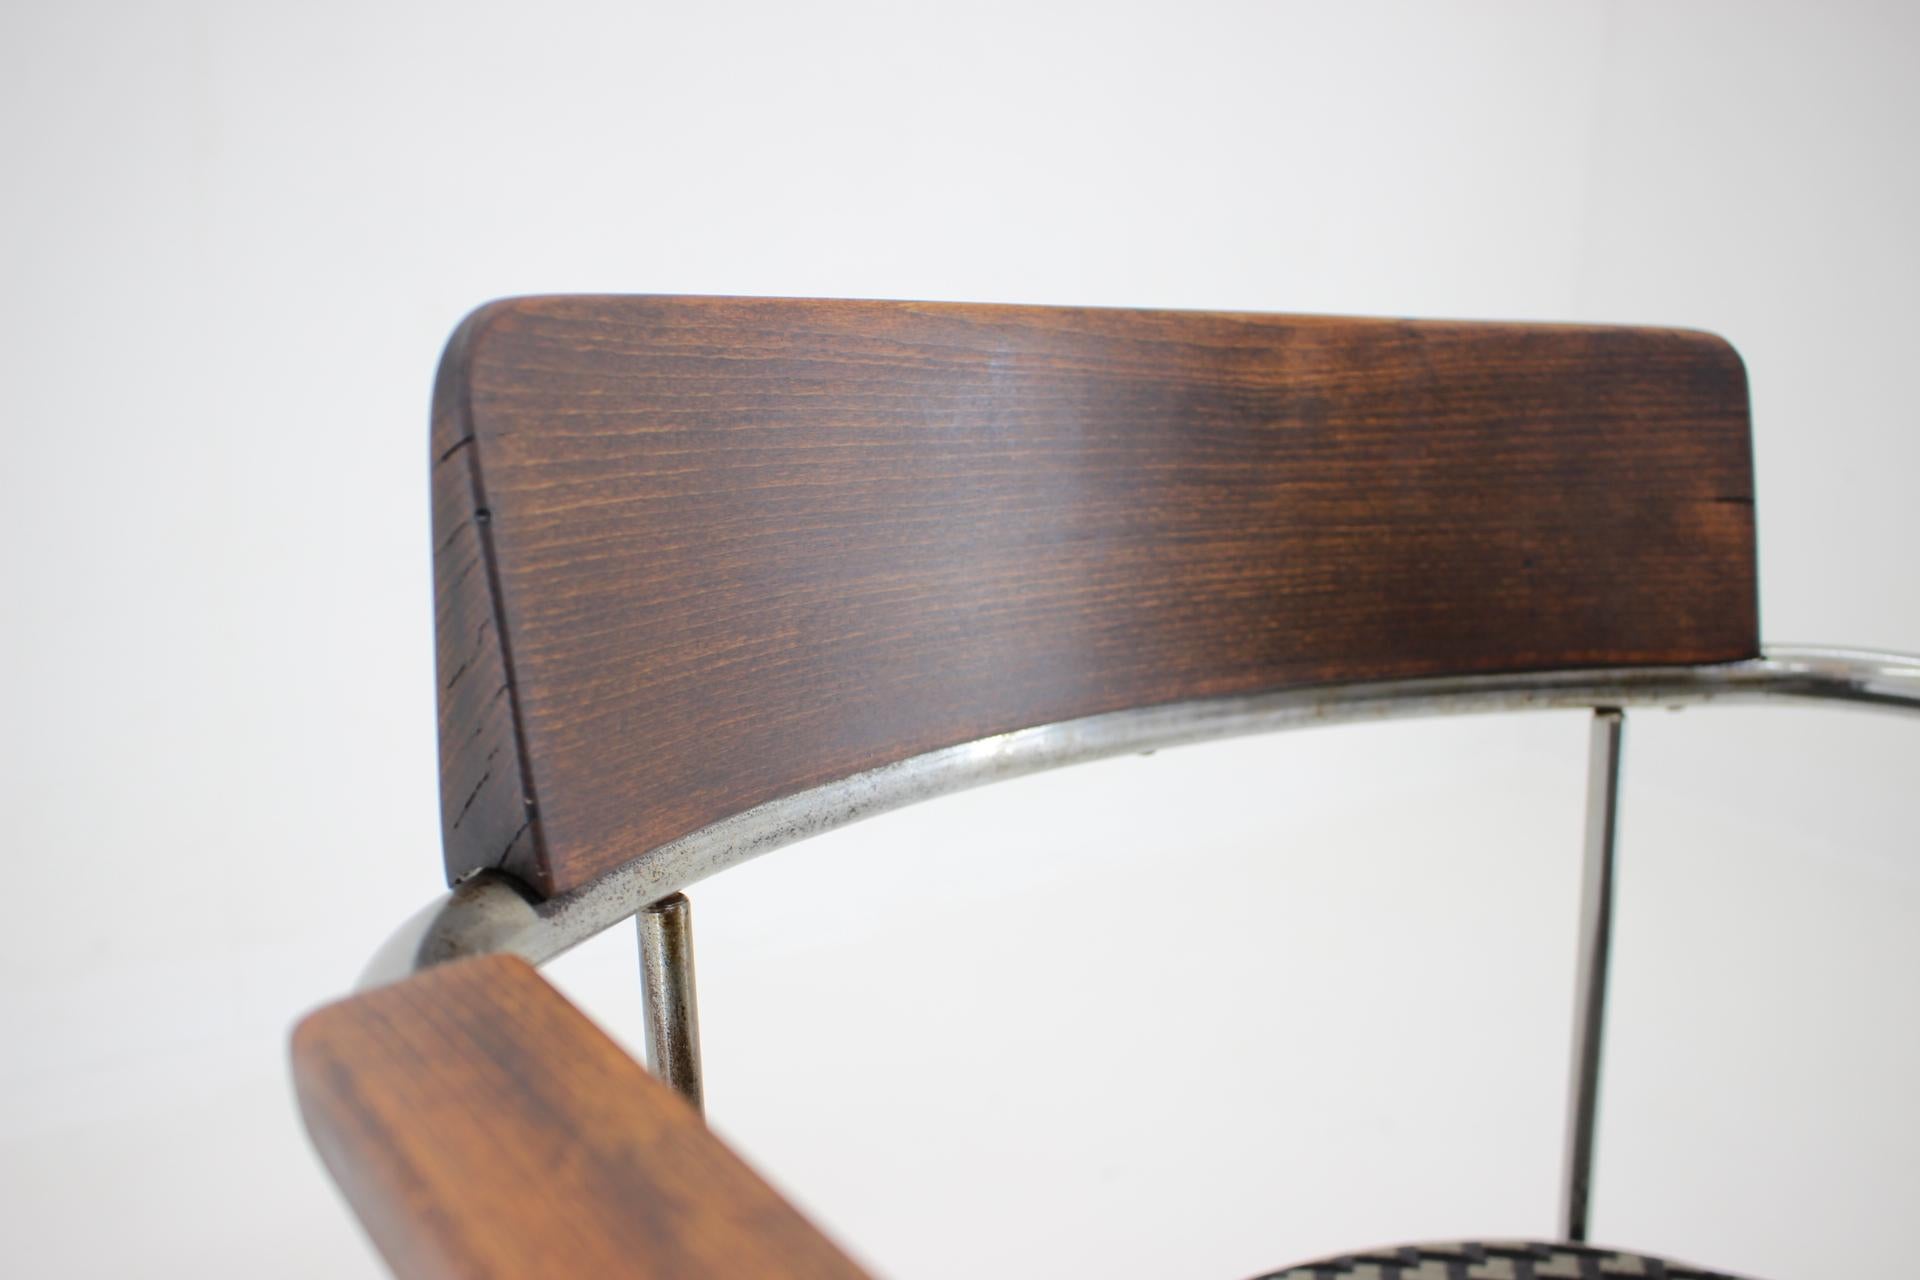 Bauhaus Tubular Steel Chrome Desk Chair 1930s / Czechoslovakia For Sale 2